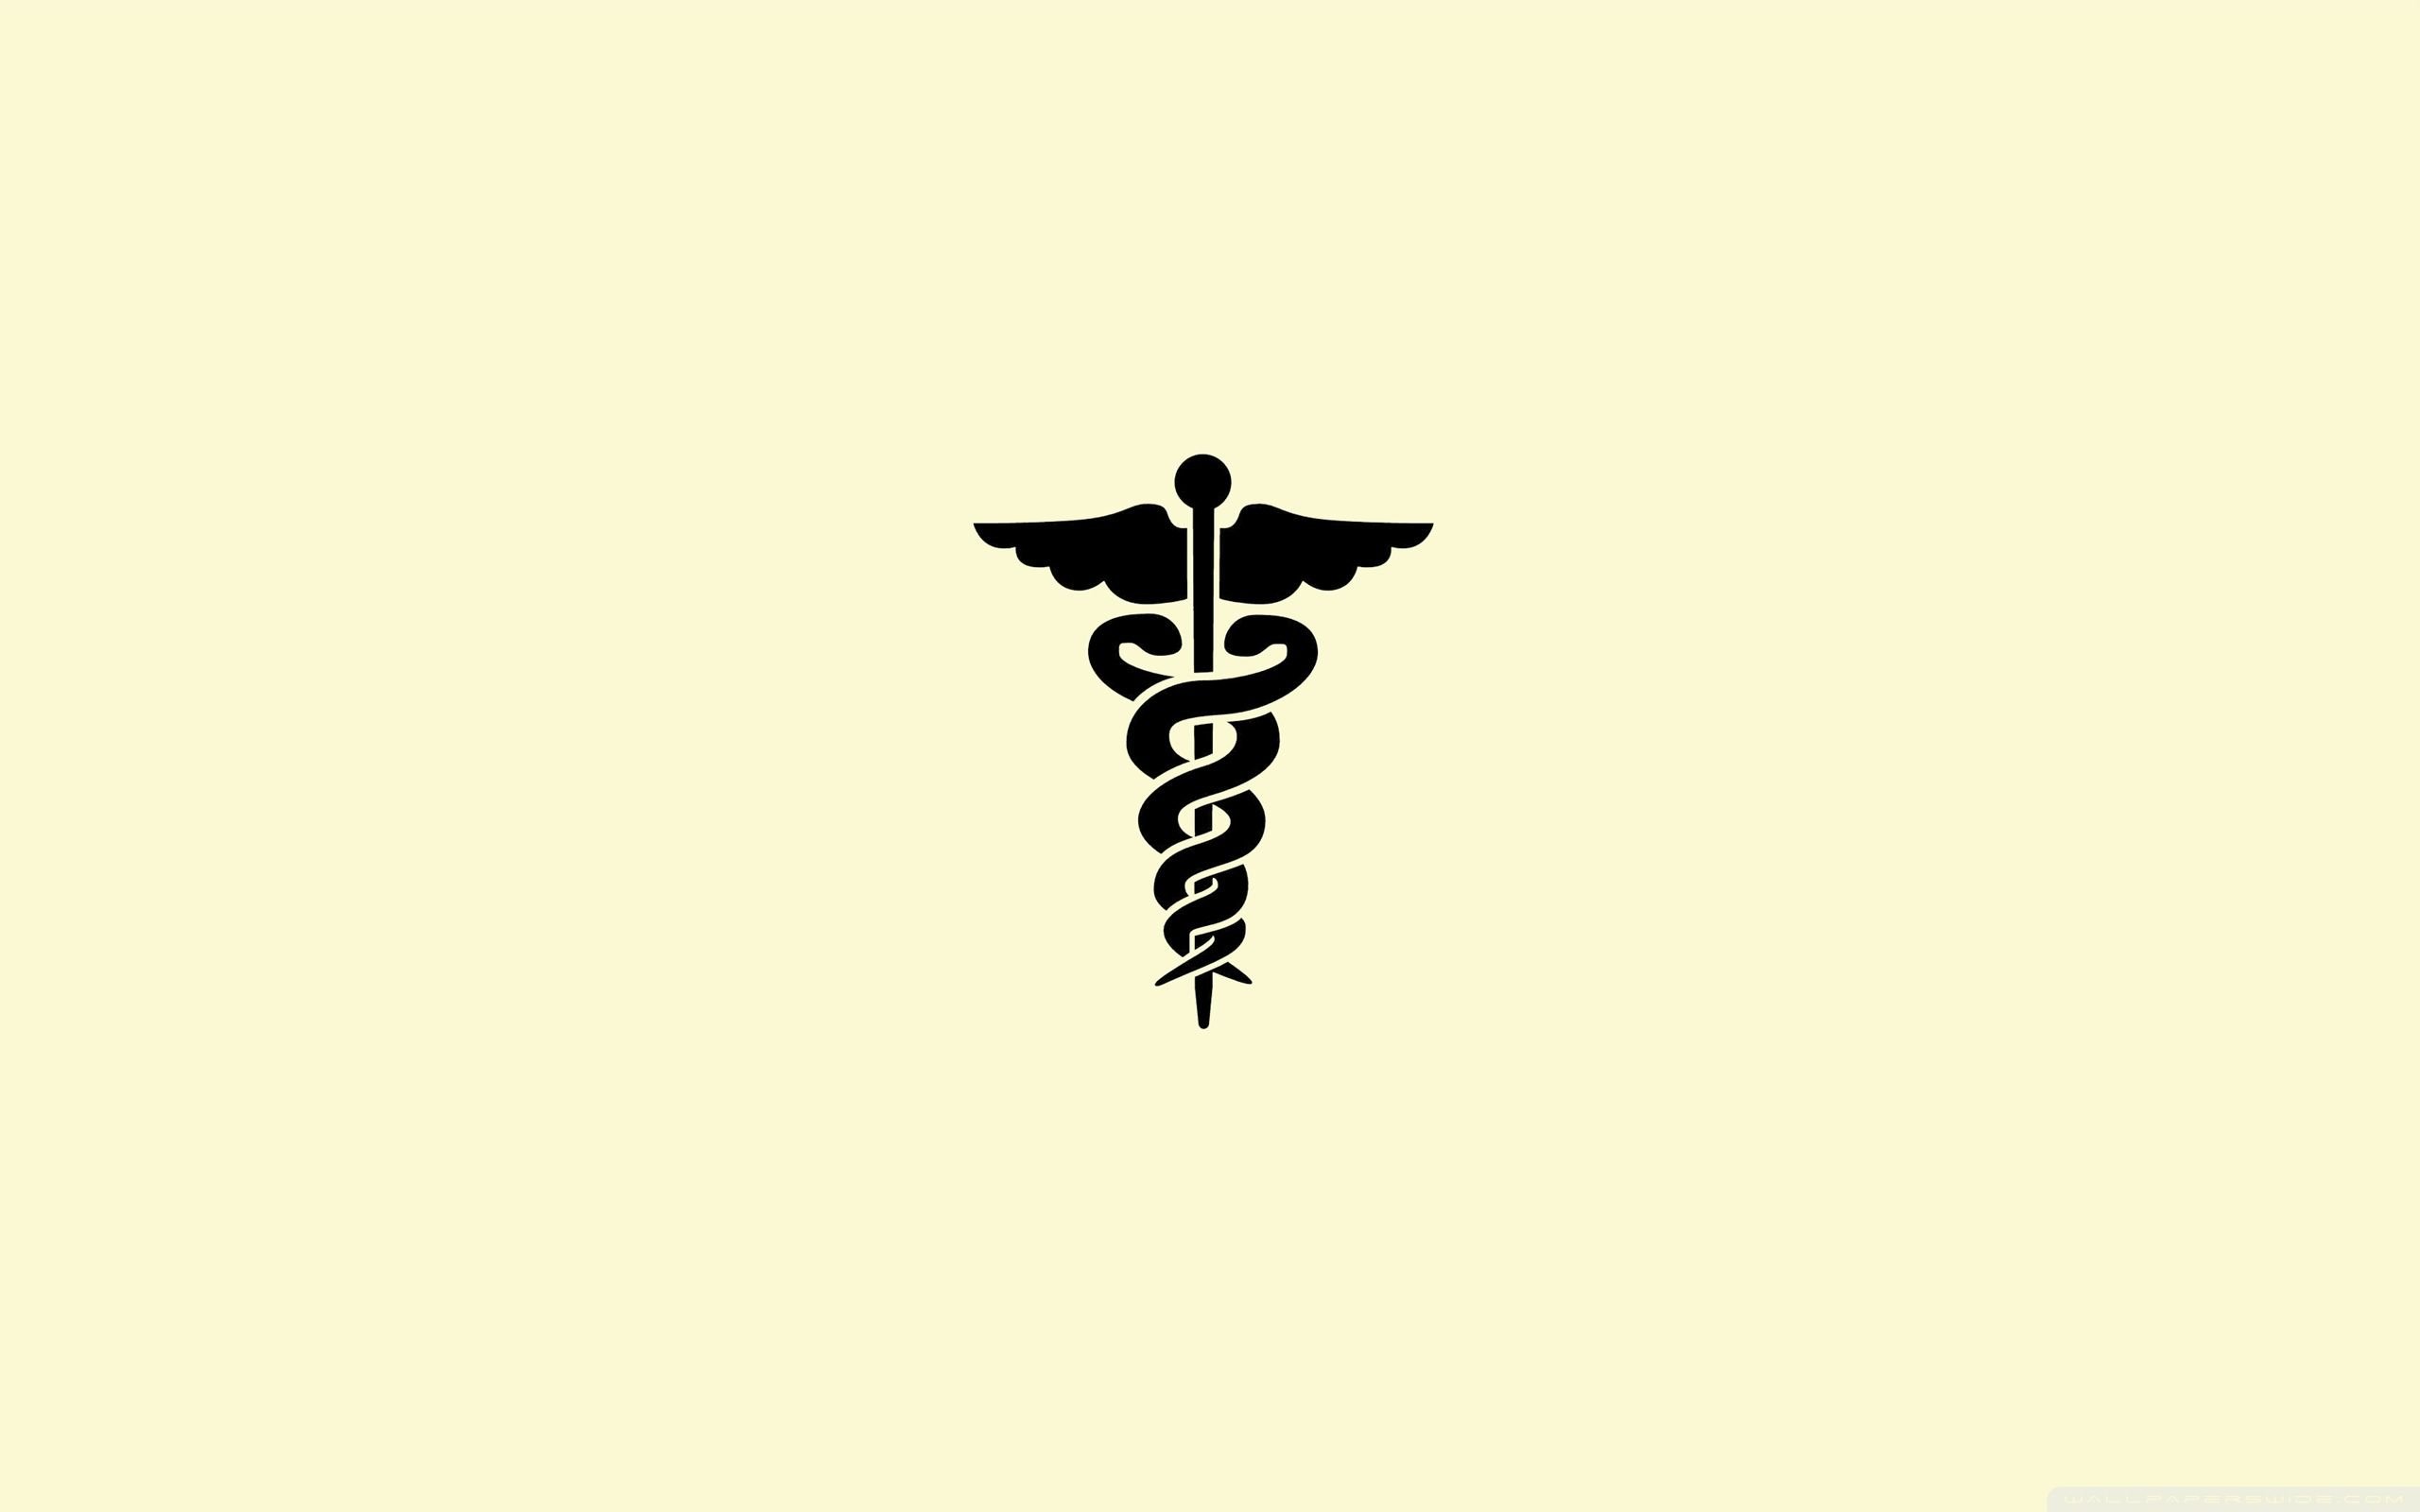 Medical Symbol Wallpaper Free .wallpaperaccess.com